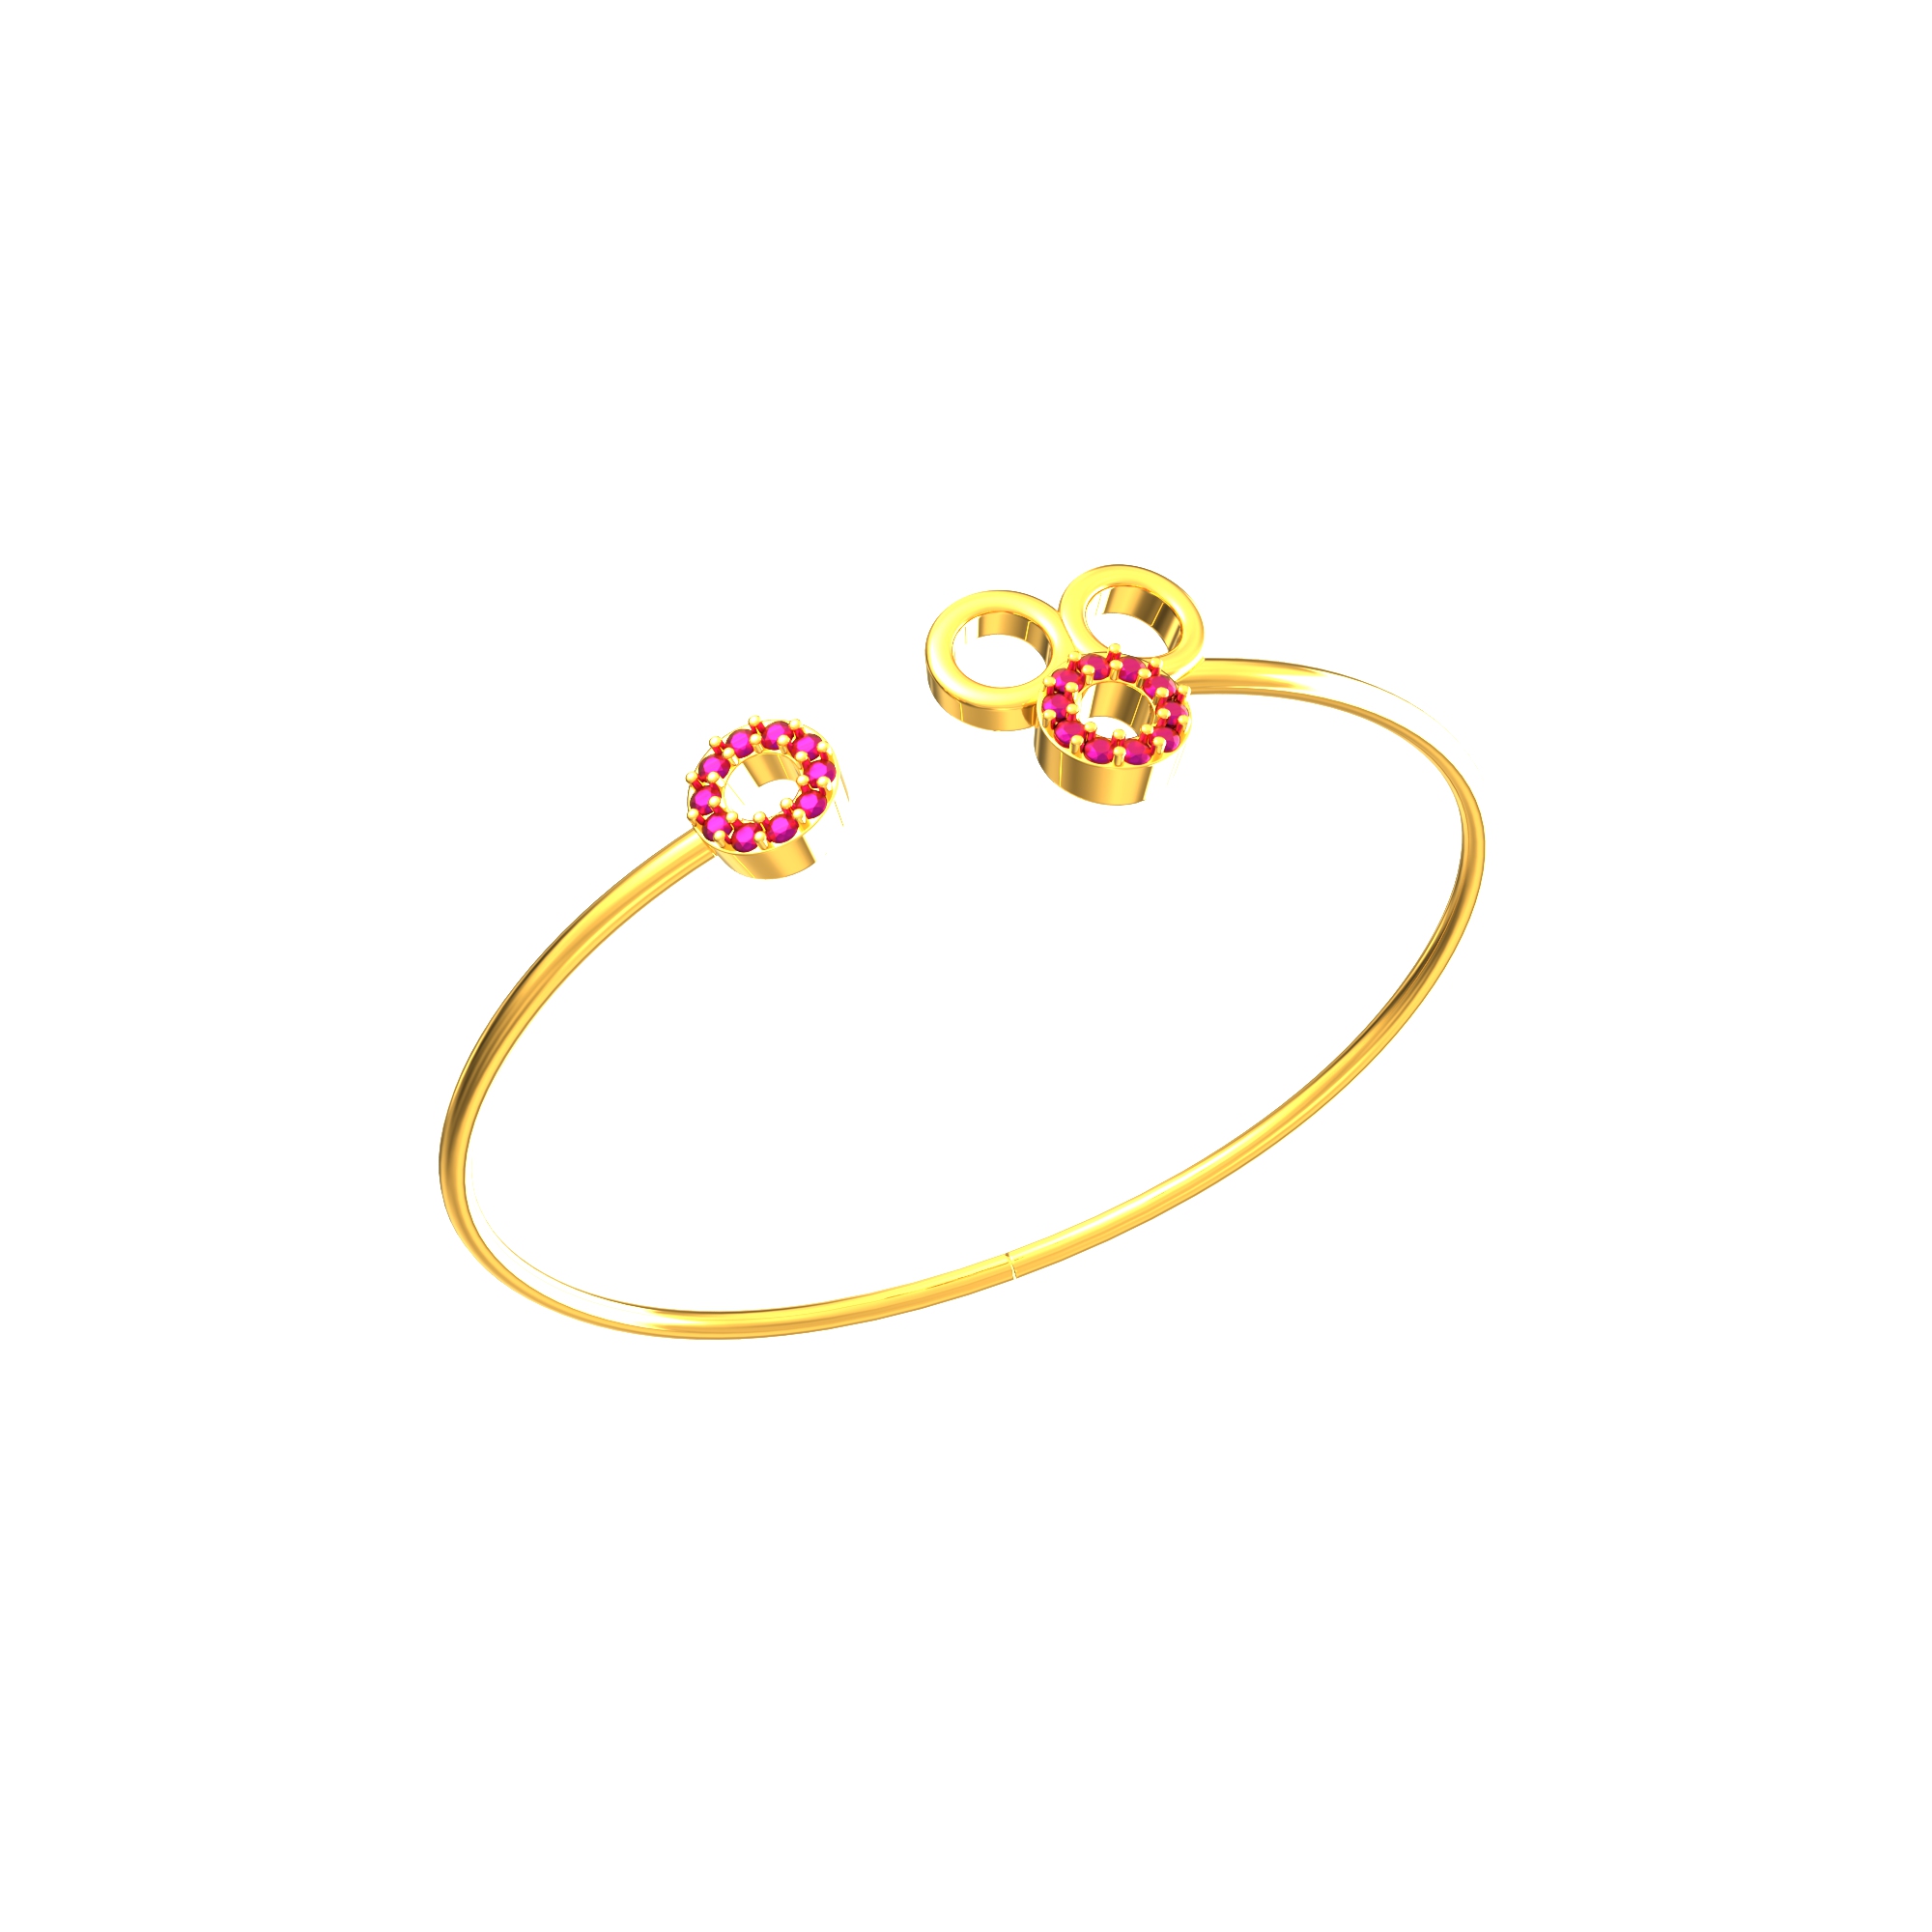 Shop Indian Gold Bracelets | 22k Gold Bracelets for Women